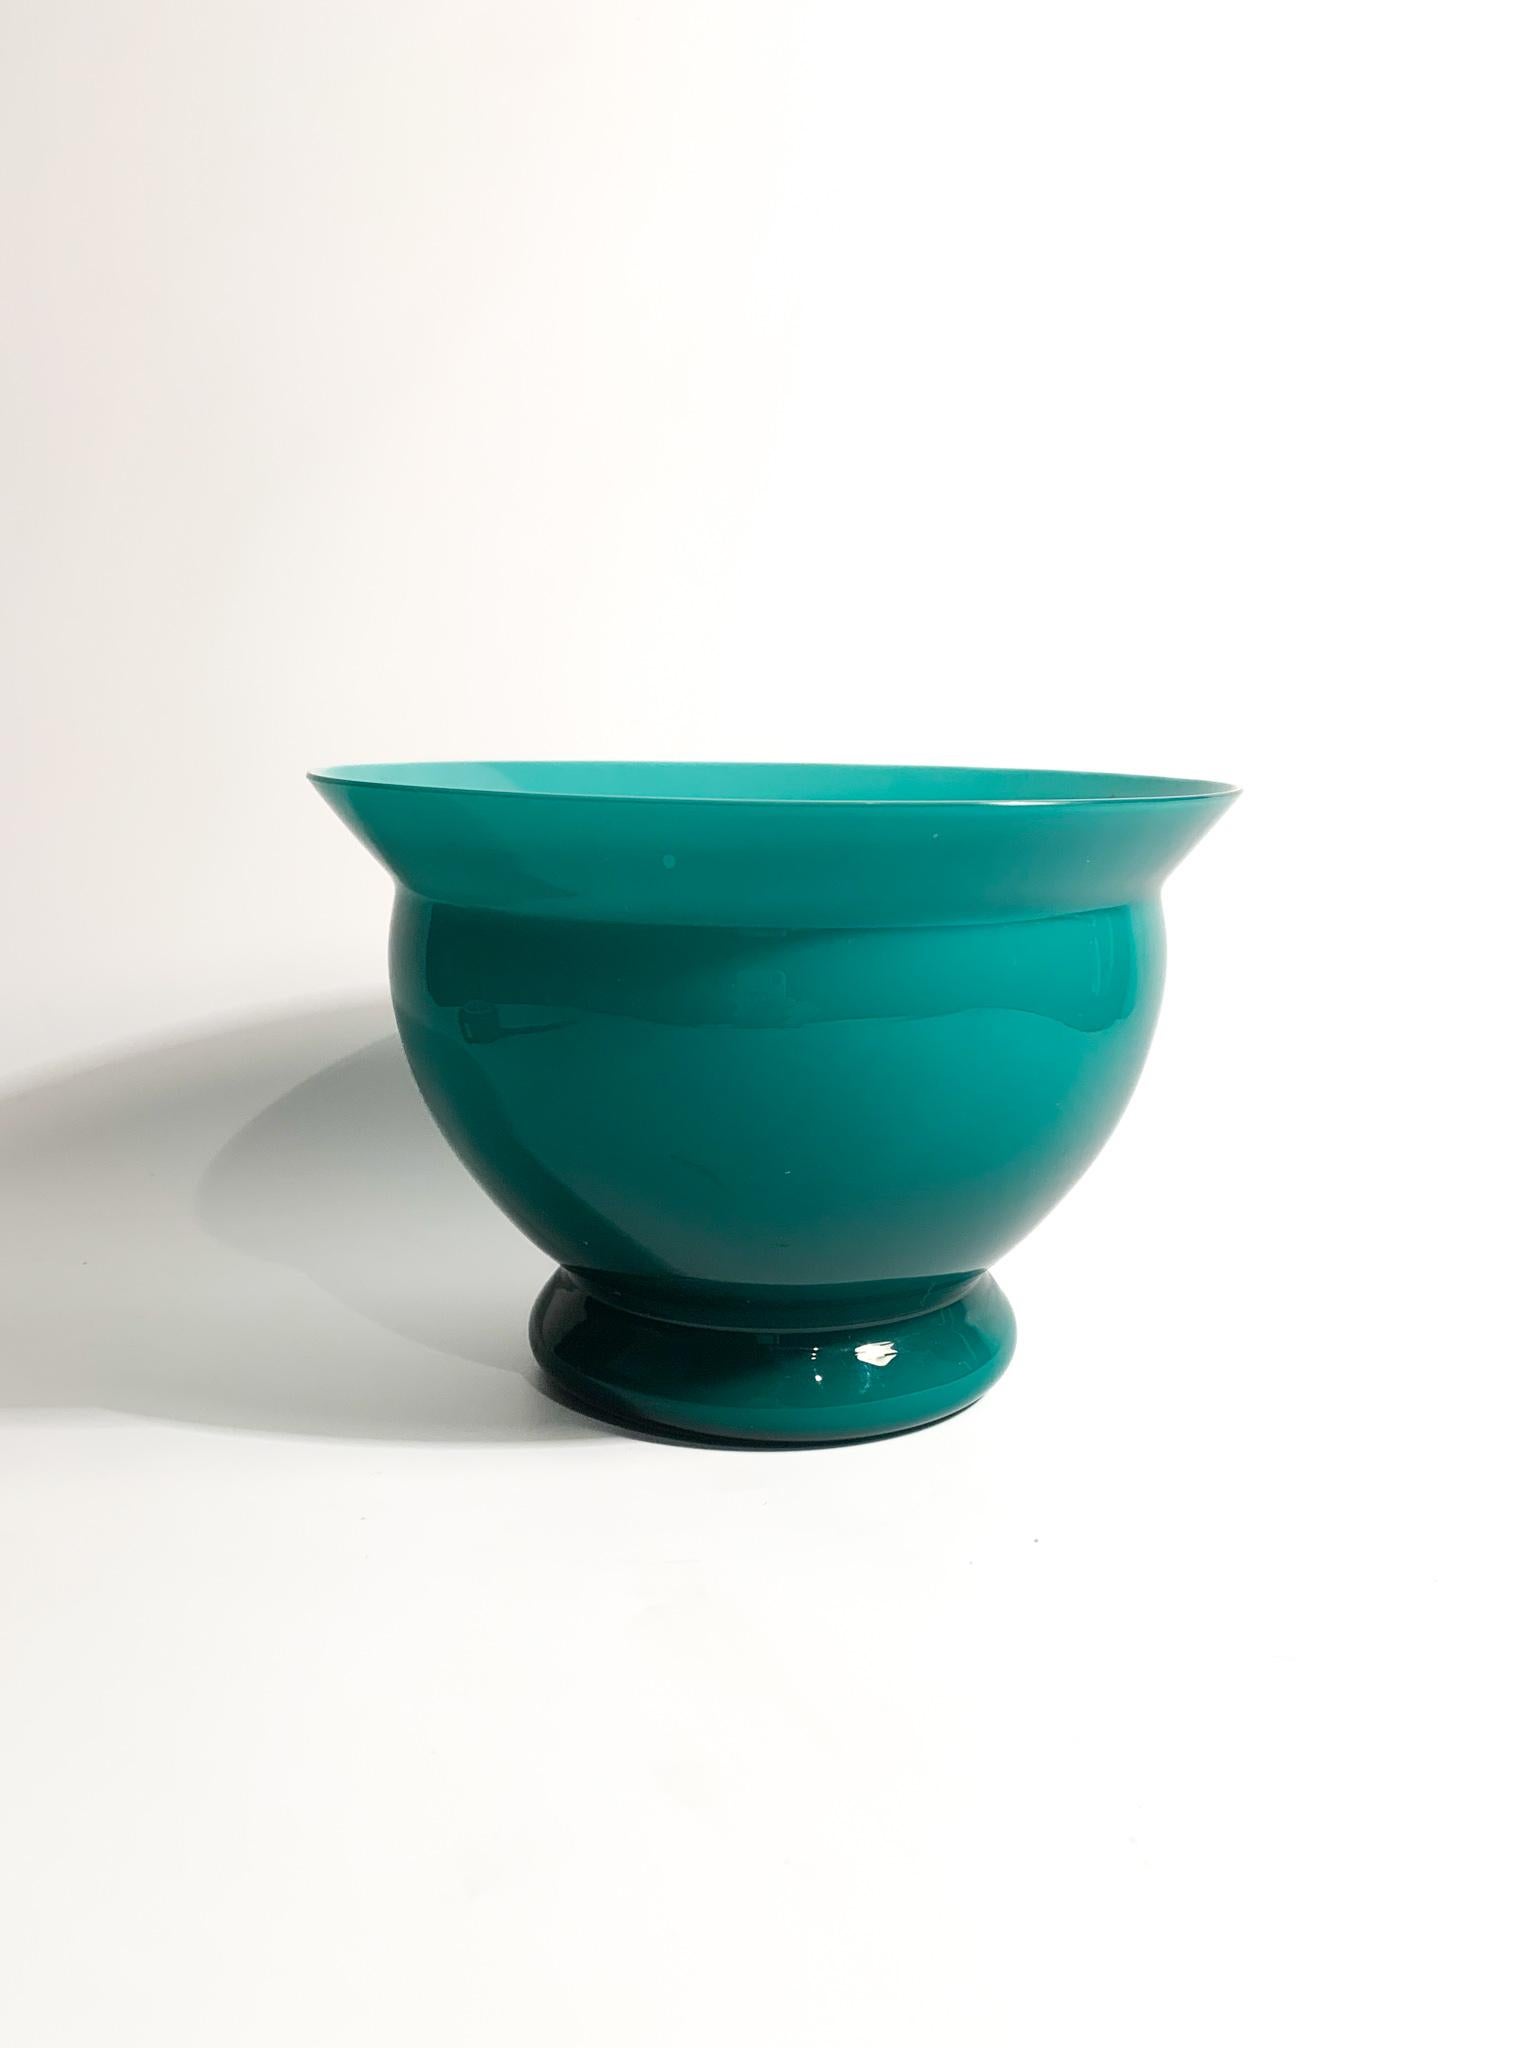 Vase en verre de Murano bleu clair de Venini, conçu par Alessandro Mendini dans les années 1980.

Ø cm 18,5 h cm 12,5

Depuis la fin des années 70, Alessandro Mendini fait partie des innovateurs du design italien. Il a travaillé pour de nombreuses